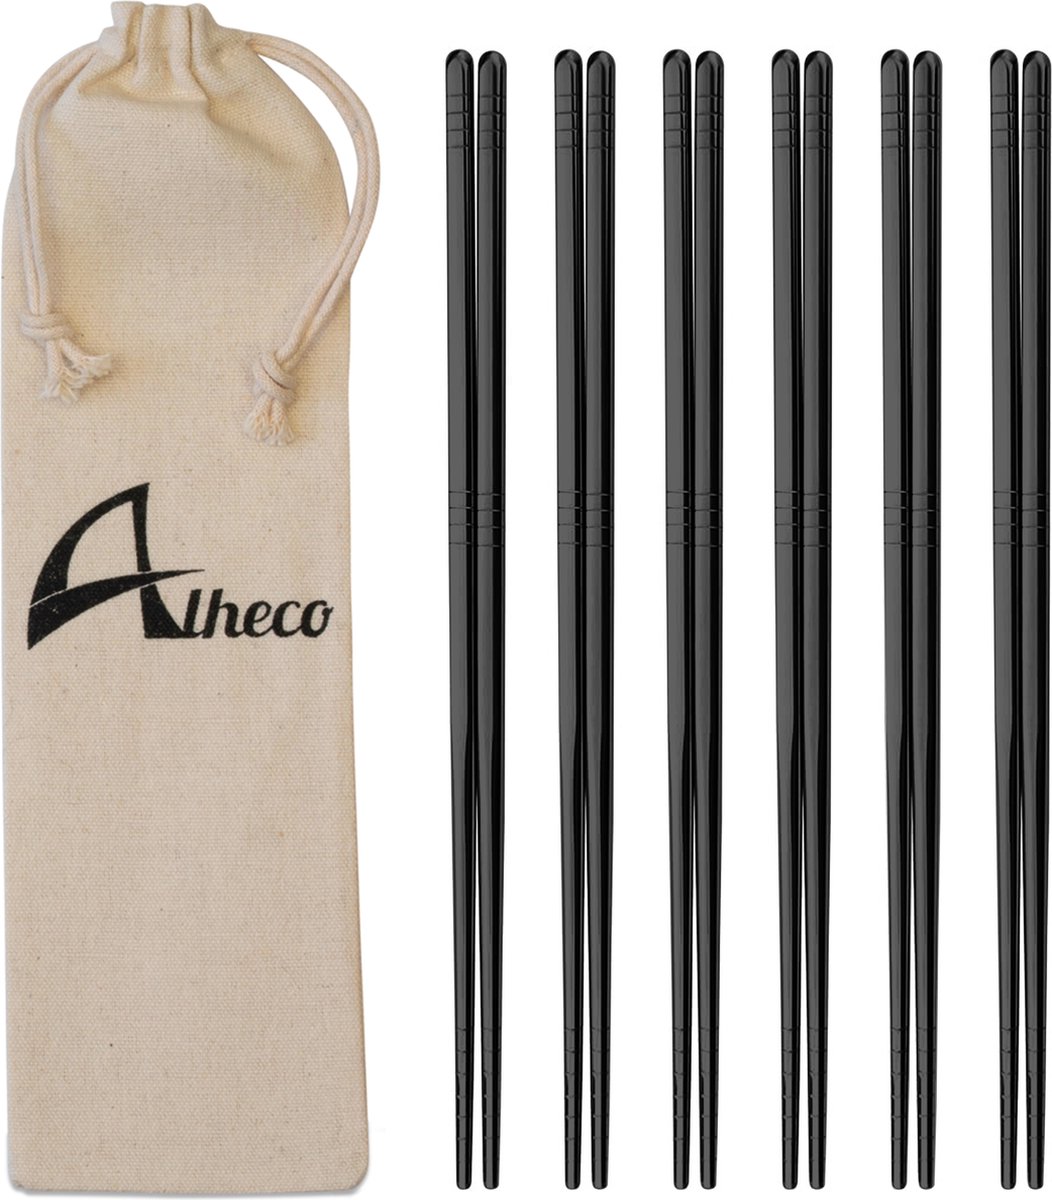 Alheco 6 paar Koreaanse chopsticks - Eetstokjes - Metaal / RVS - Zwart - Alheco